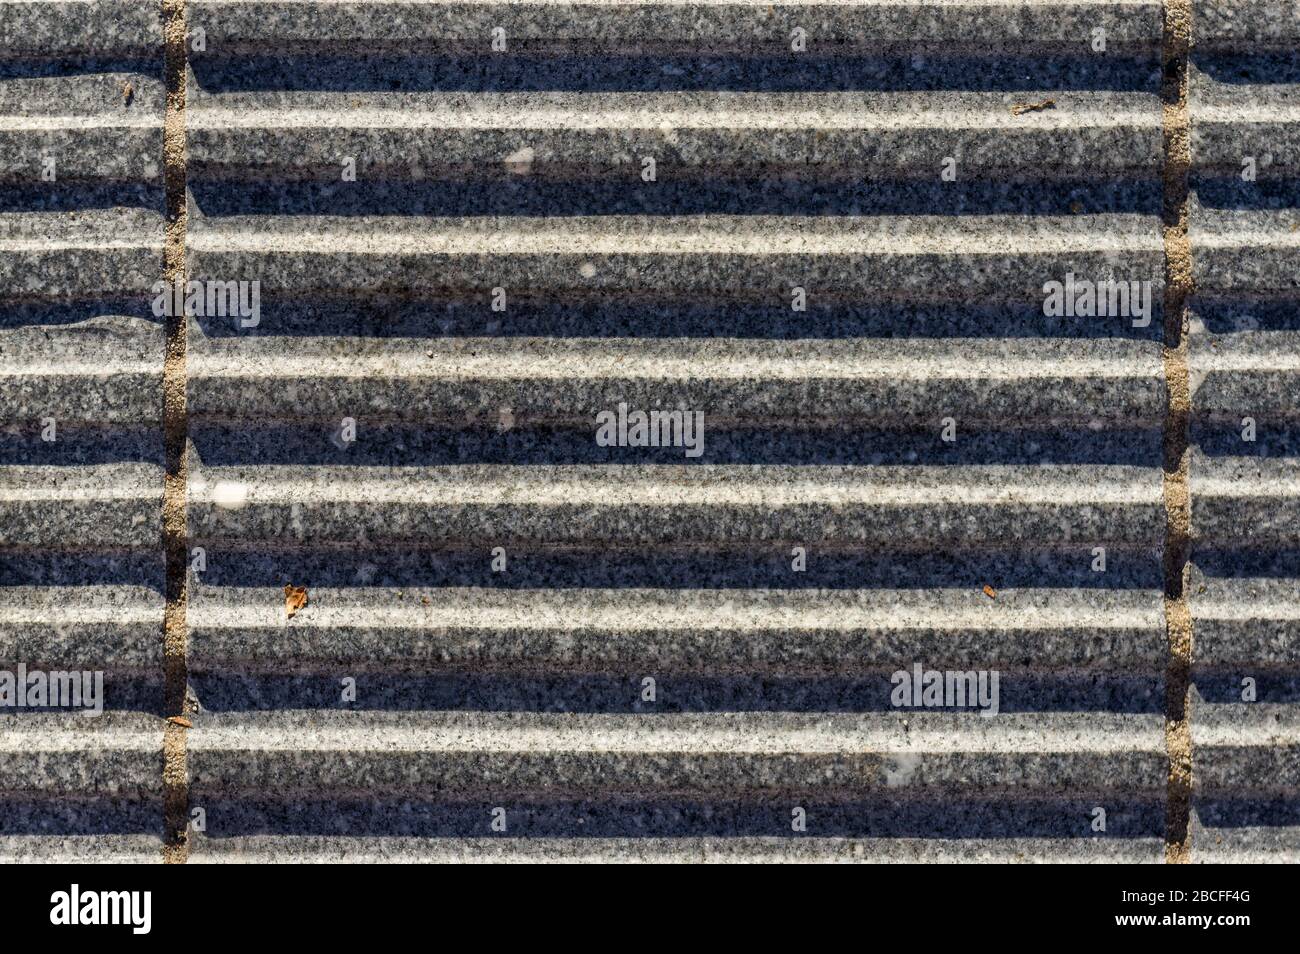 Pierres de granit avec rainures comme gouttières pour drainage sûr-pied Banque D'Images